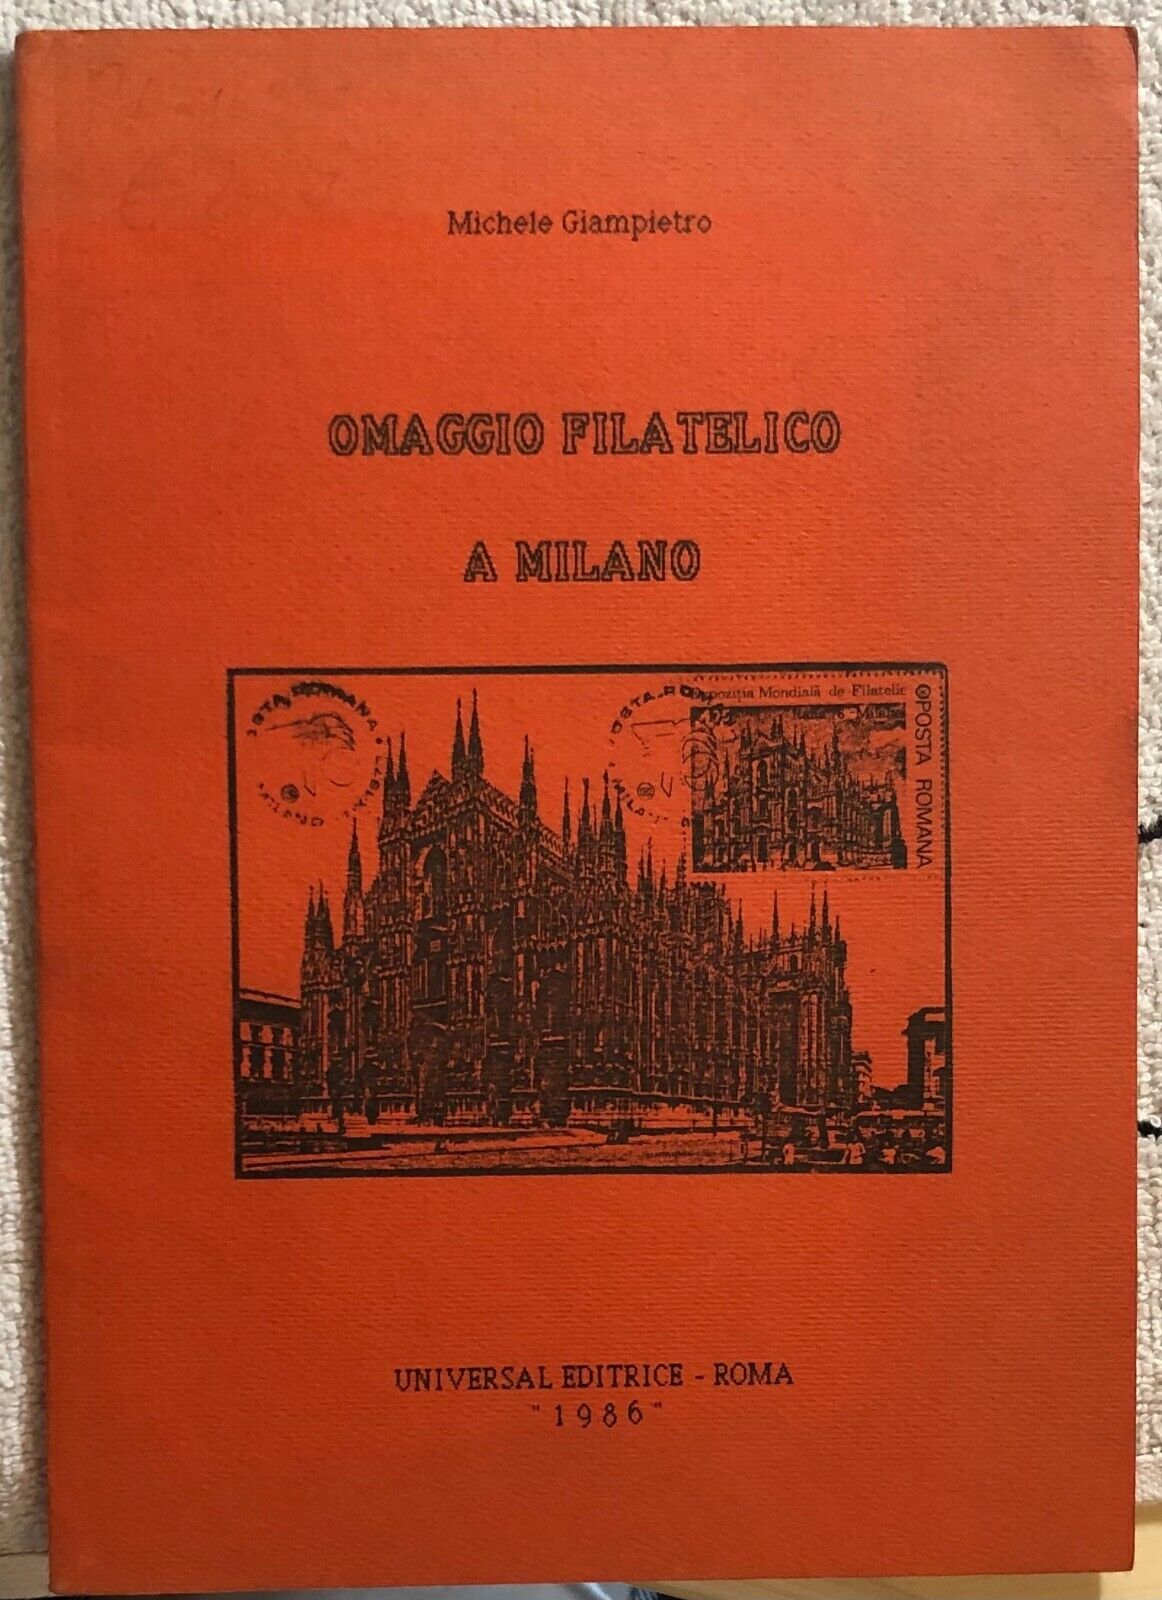 Omaggio filatelico a Milano di Michele Giampietro,  1986,  Universal Editrice